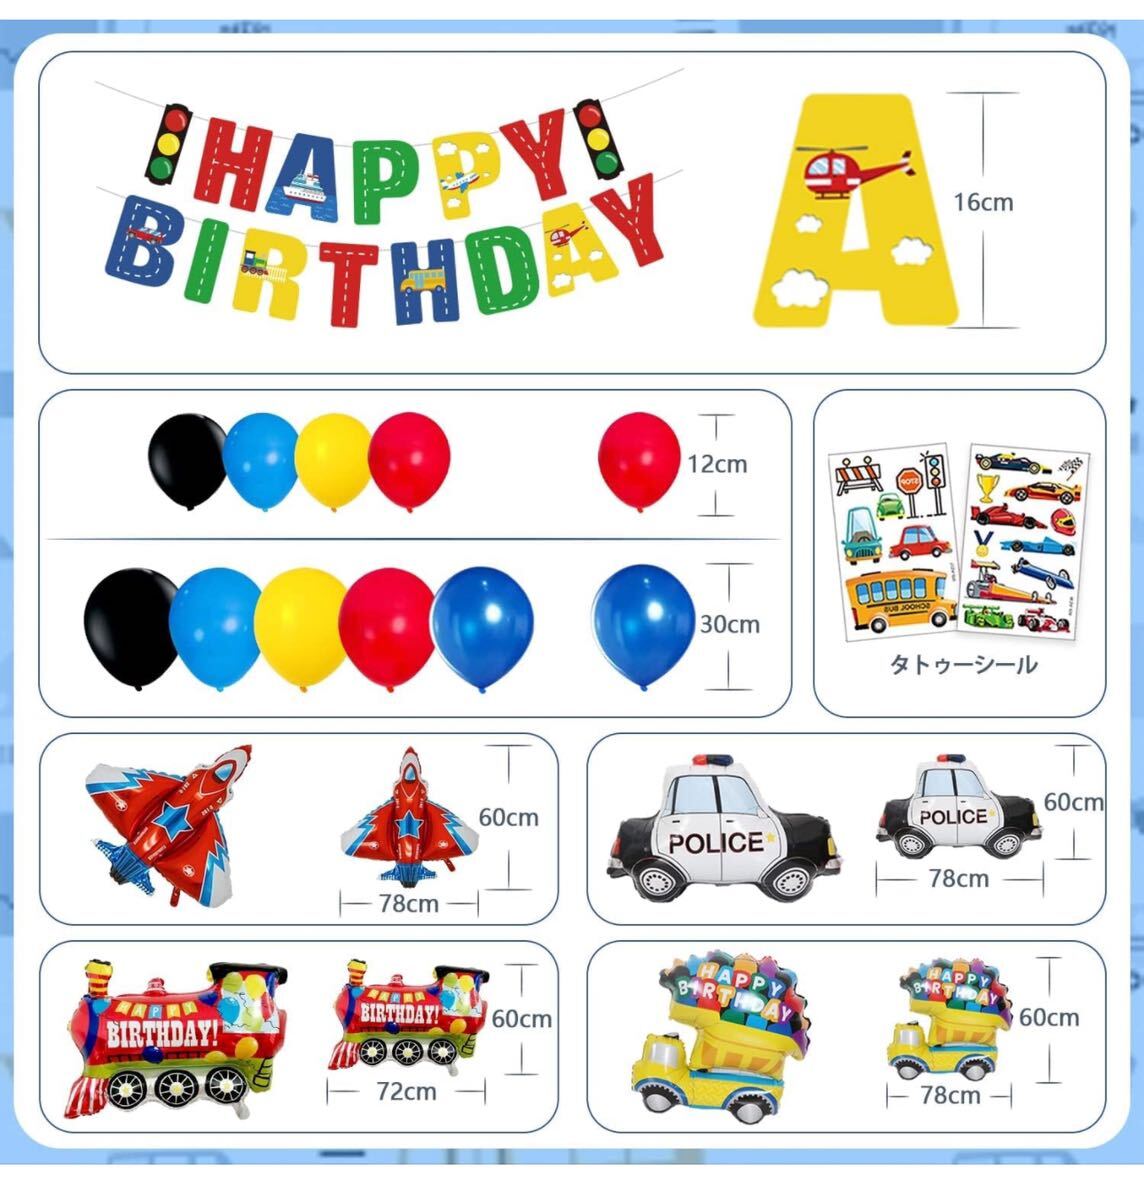 バースデーバルーン 車 誕生日 飾り付け 男の子 バルーン 誕生日 飾り 飛行機 輸送車 列車 バースデー パトカー 子供の日の画像3